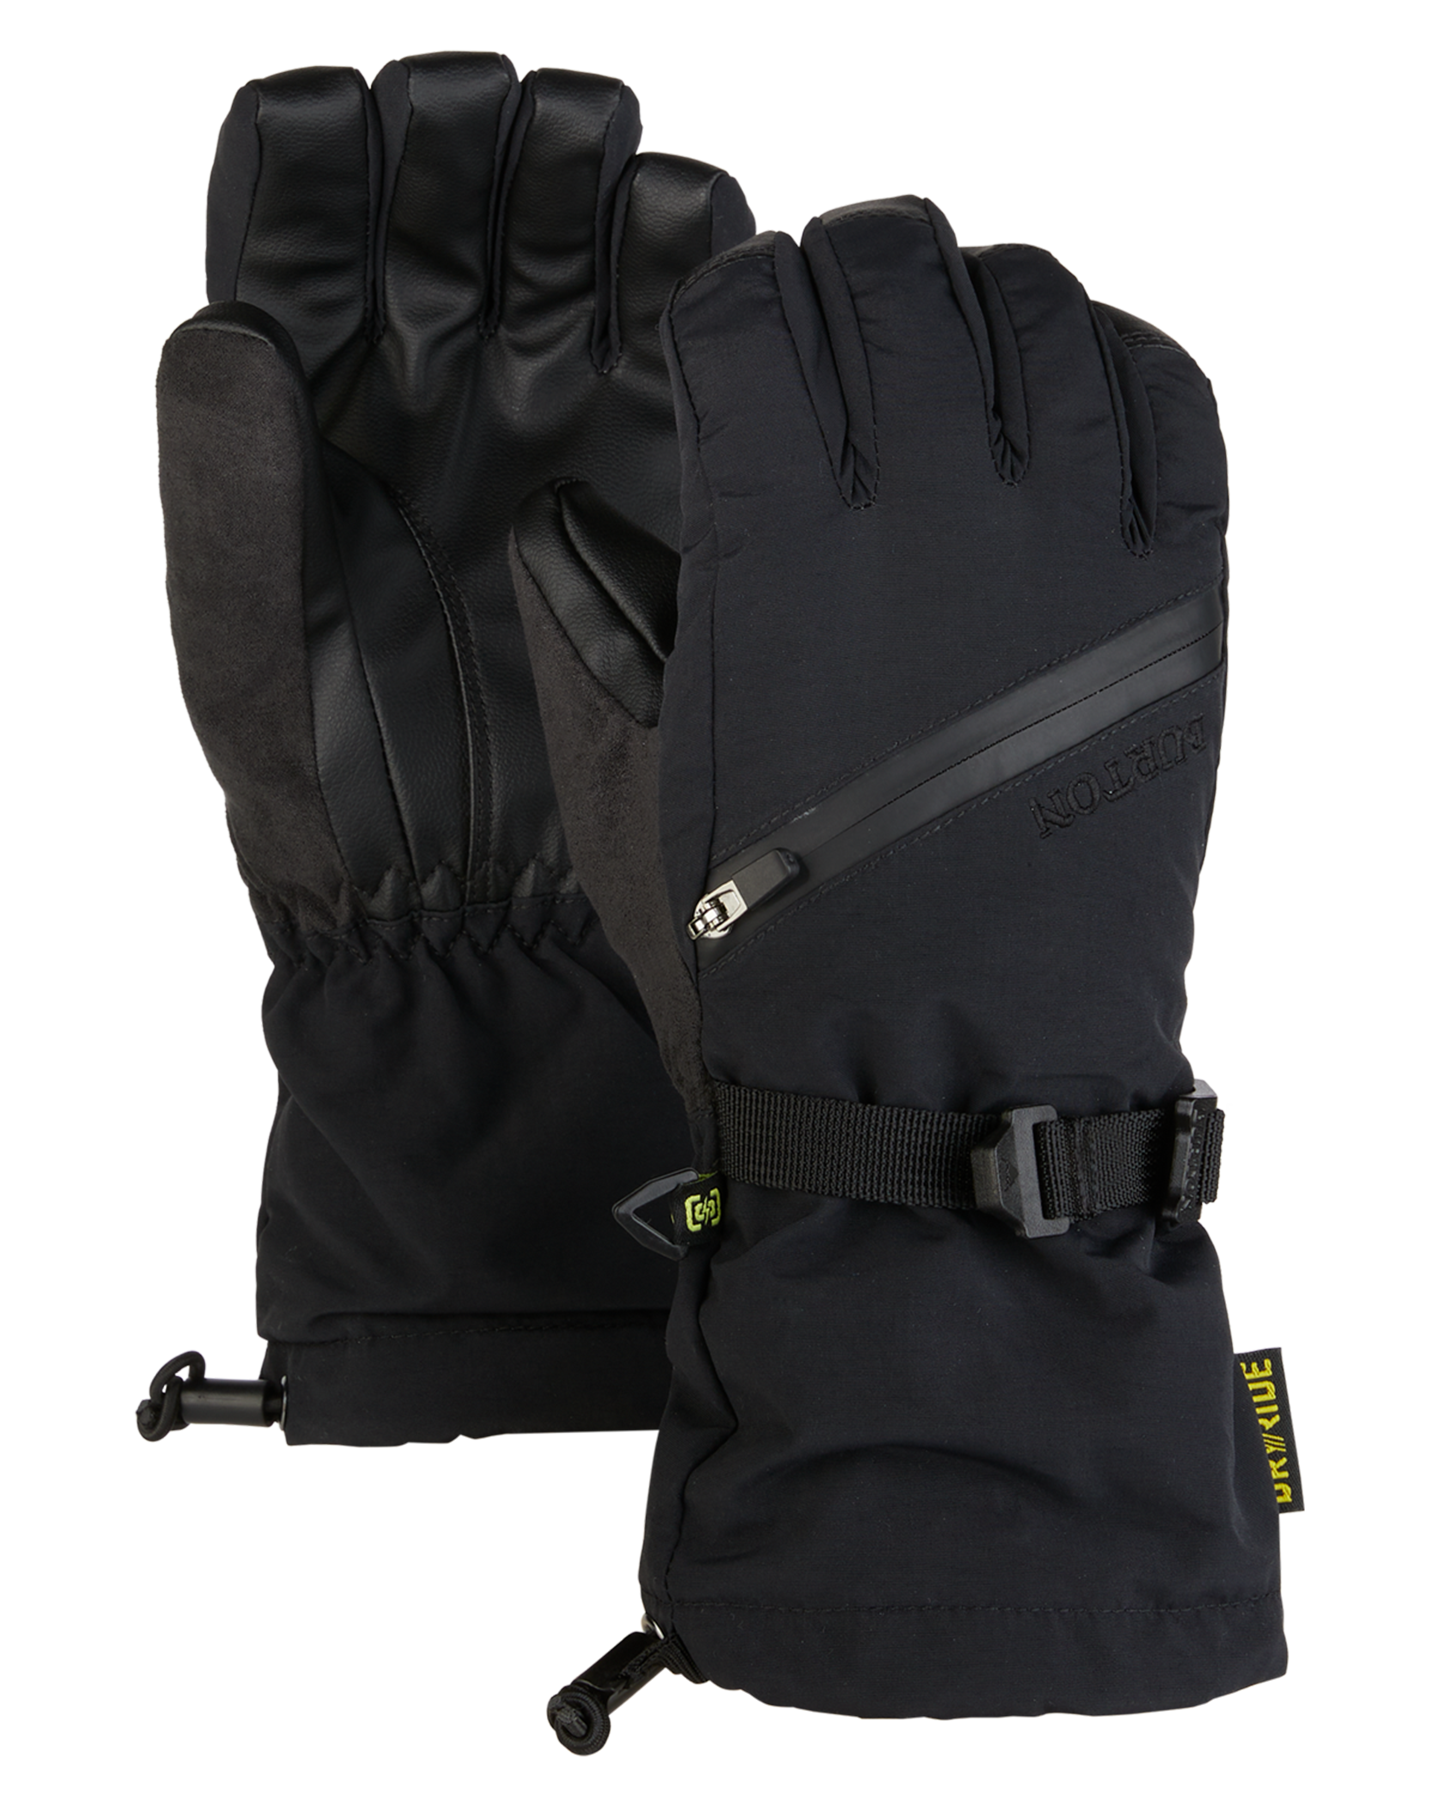 Burton Kids' Vent Snow Gloves - True Black Kids' Snow Gloves & Mittens - SnowSkiersWarehouse